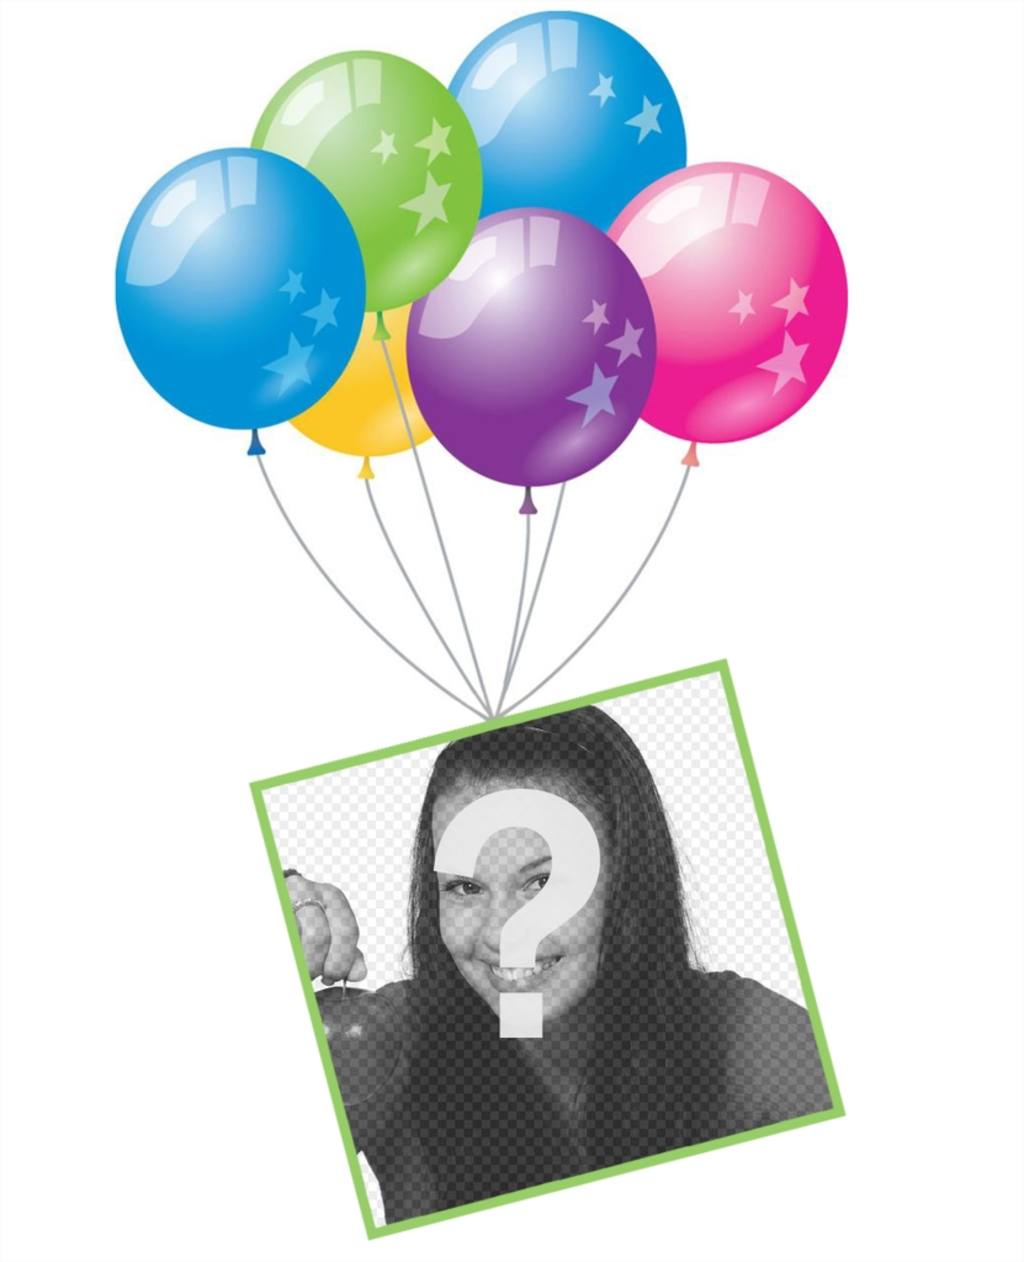 Effet photo avec des ballons et un cadre flottant pour ajouter votre photo de leffet original pour fêter un anniversaire ou une fête. Modifier avec votre photo uploader sur un cadre flottant avec des ballons colorés et partager cette carte postale gratuite dans vos réseaux..